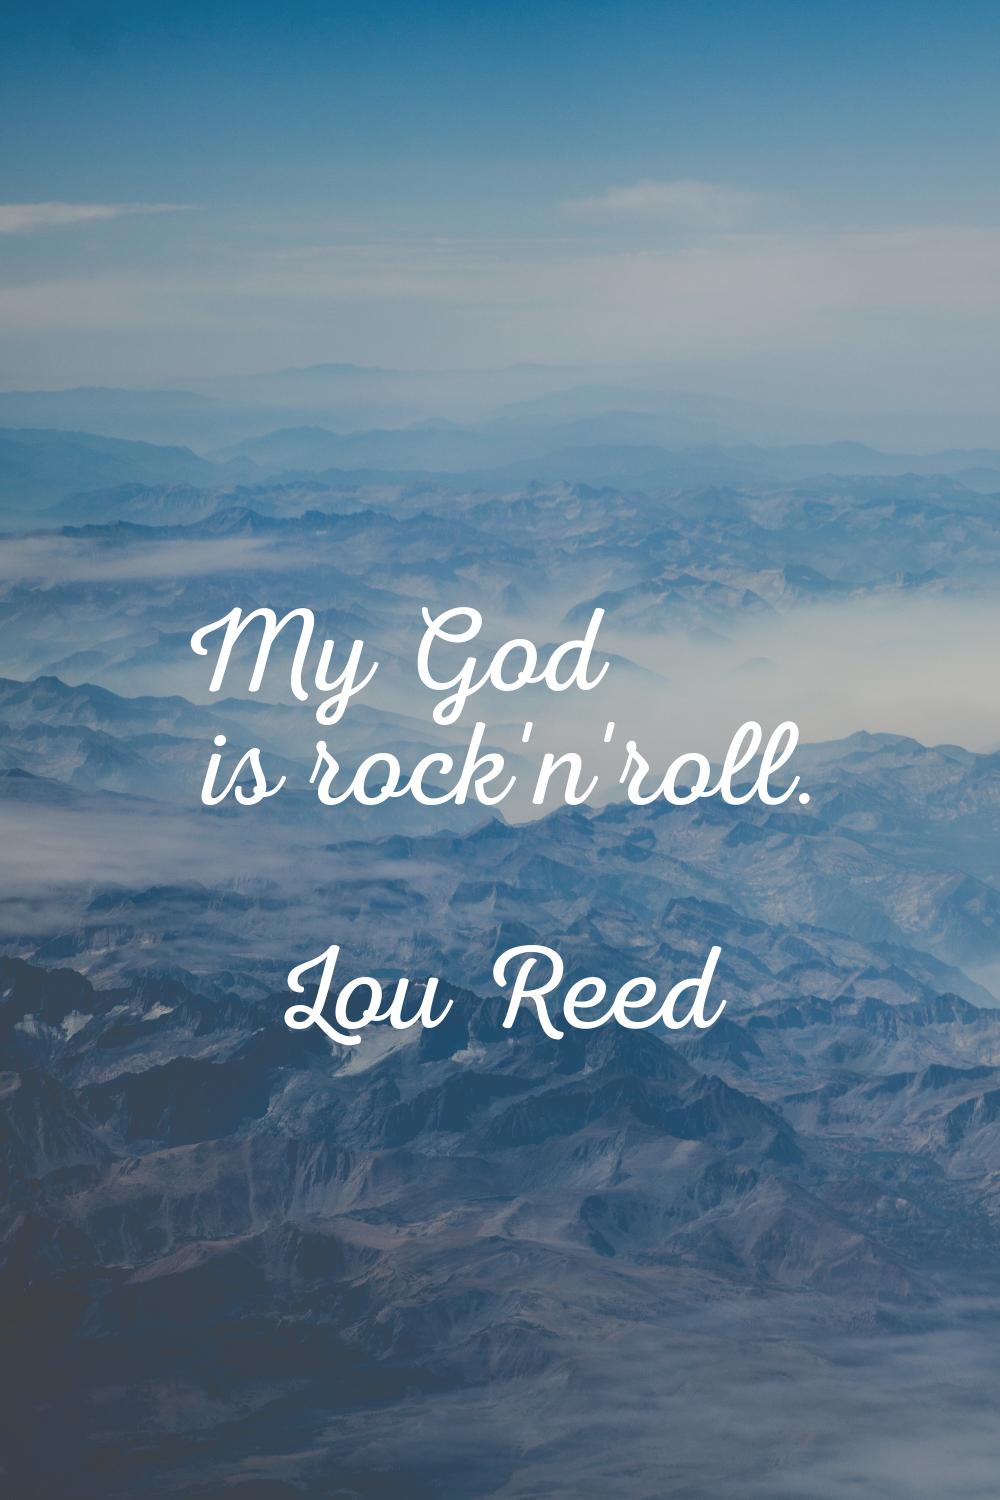 My God is rock'n'roll.